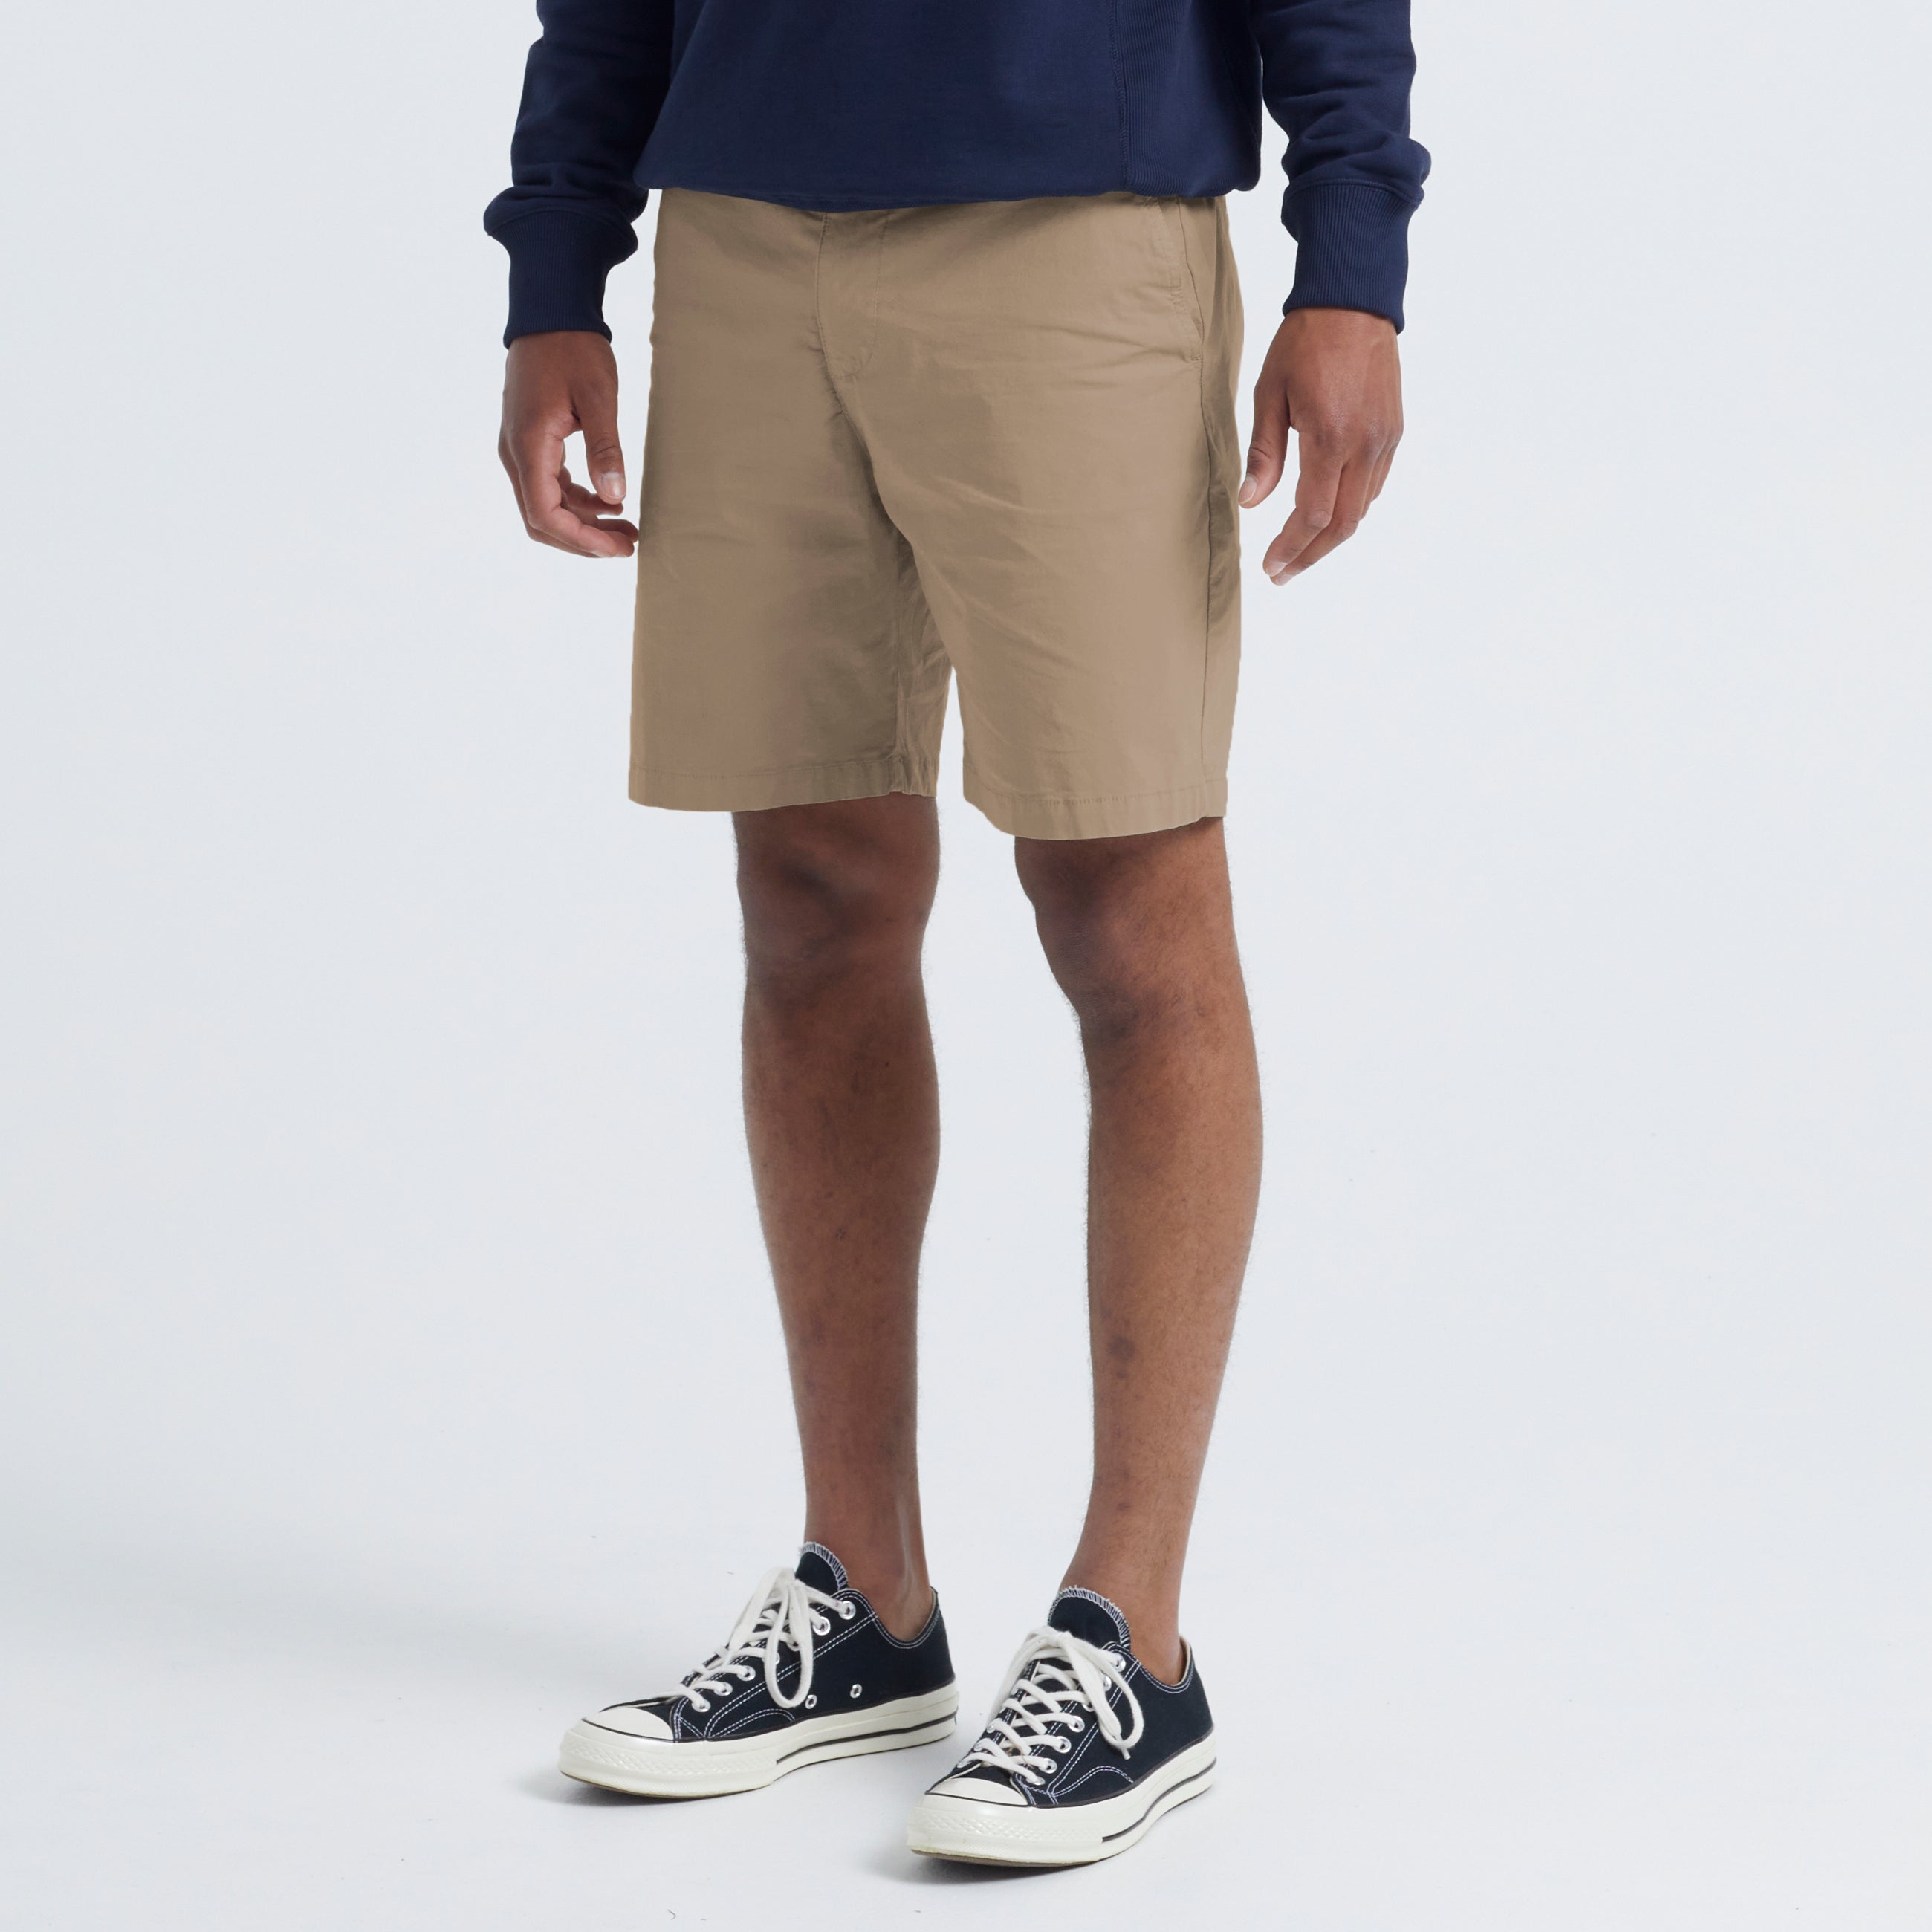 Se Gideon Light Cotton Shorts - Khaki - M / Khaki hos bygarmentmakers.dk